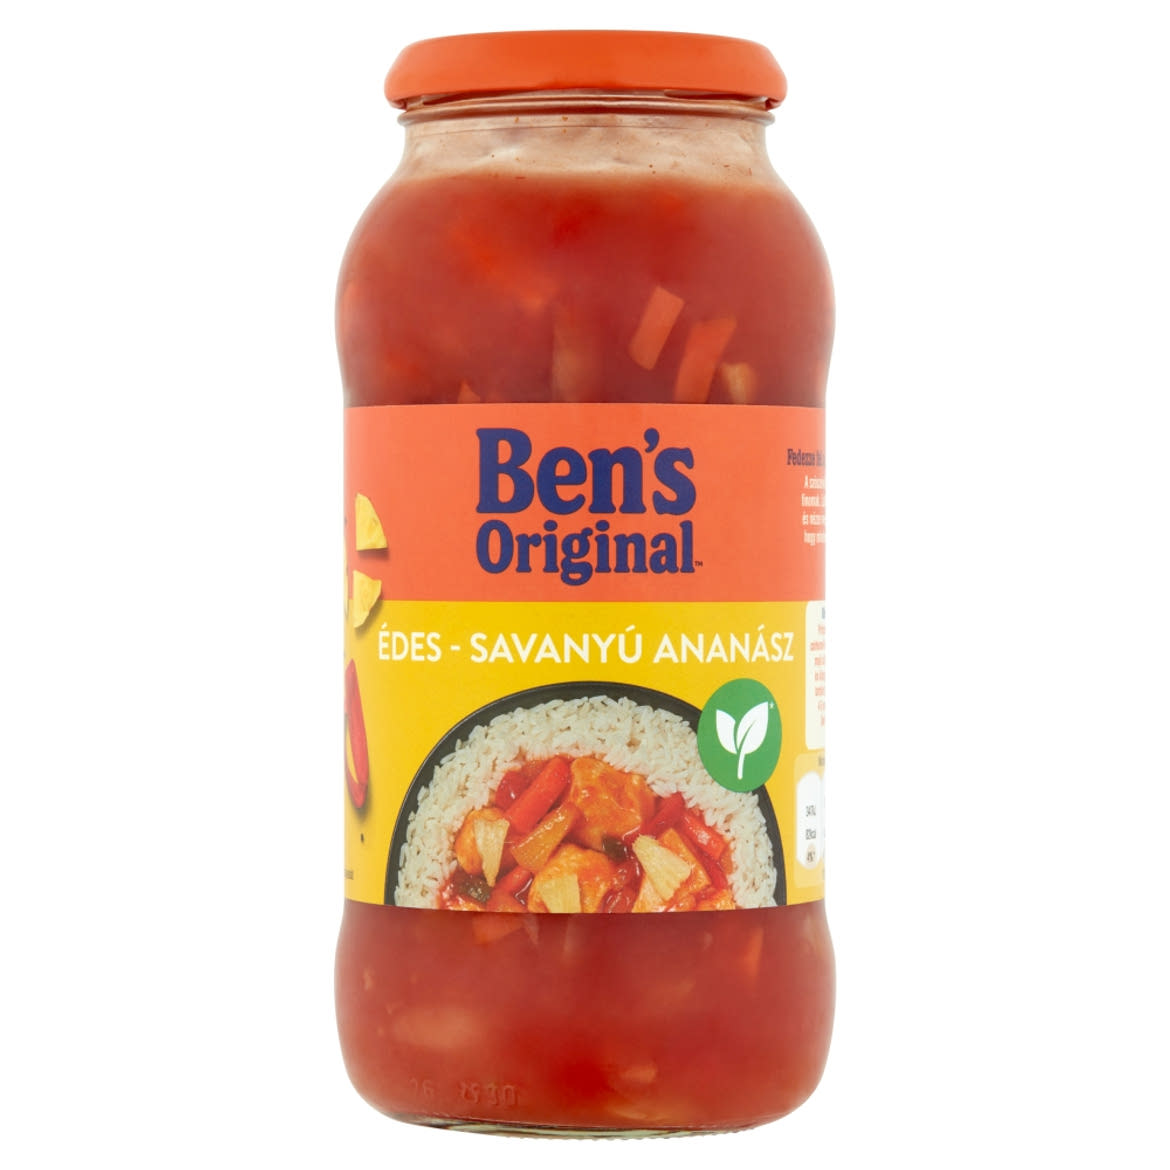 Ben's Original édes-savanyú ananász mártás